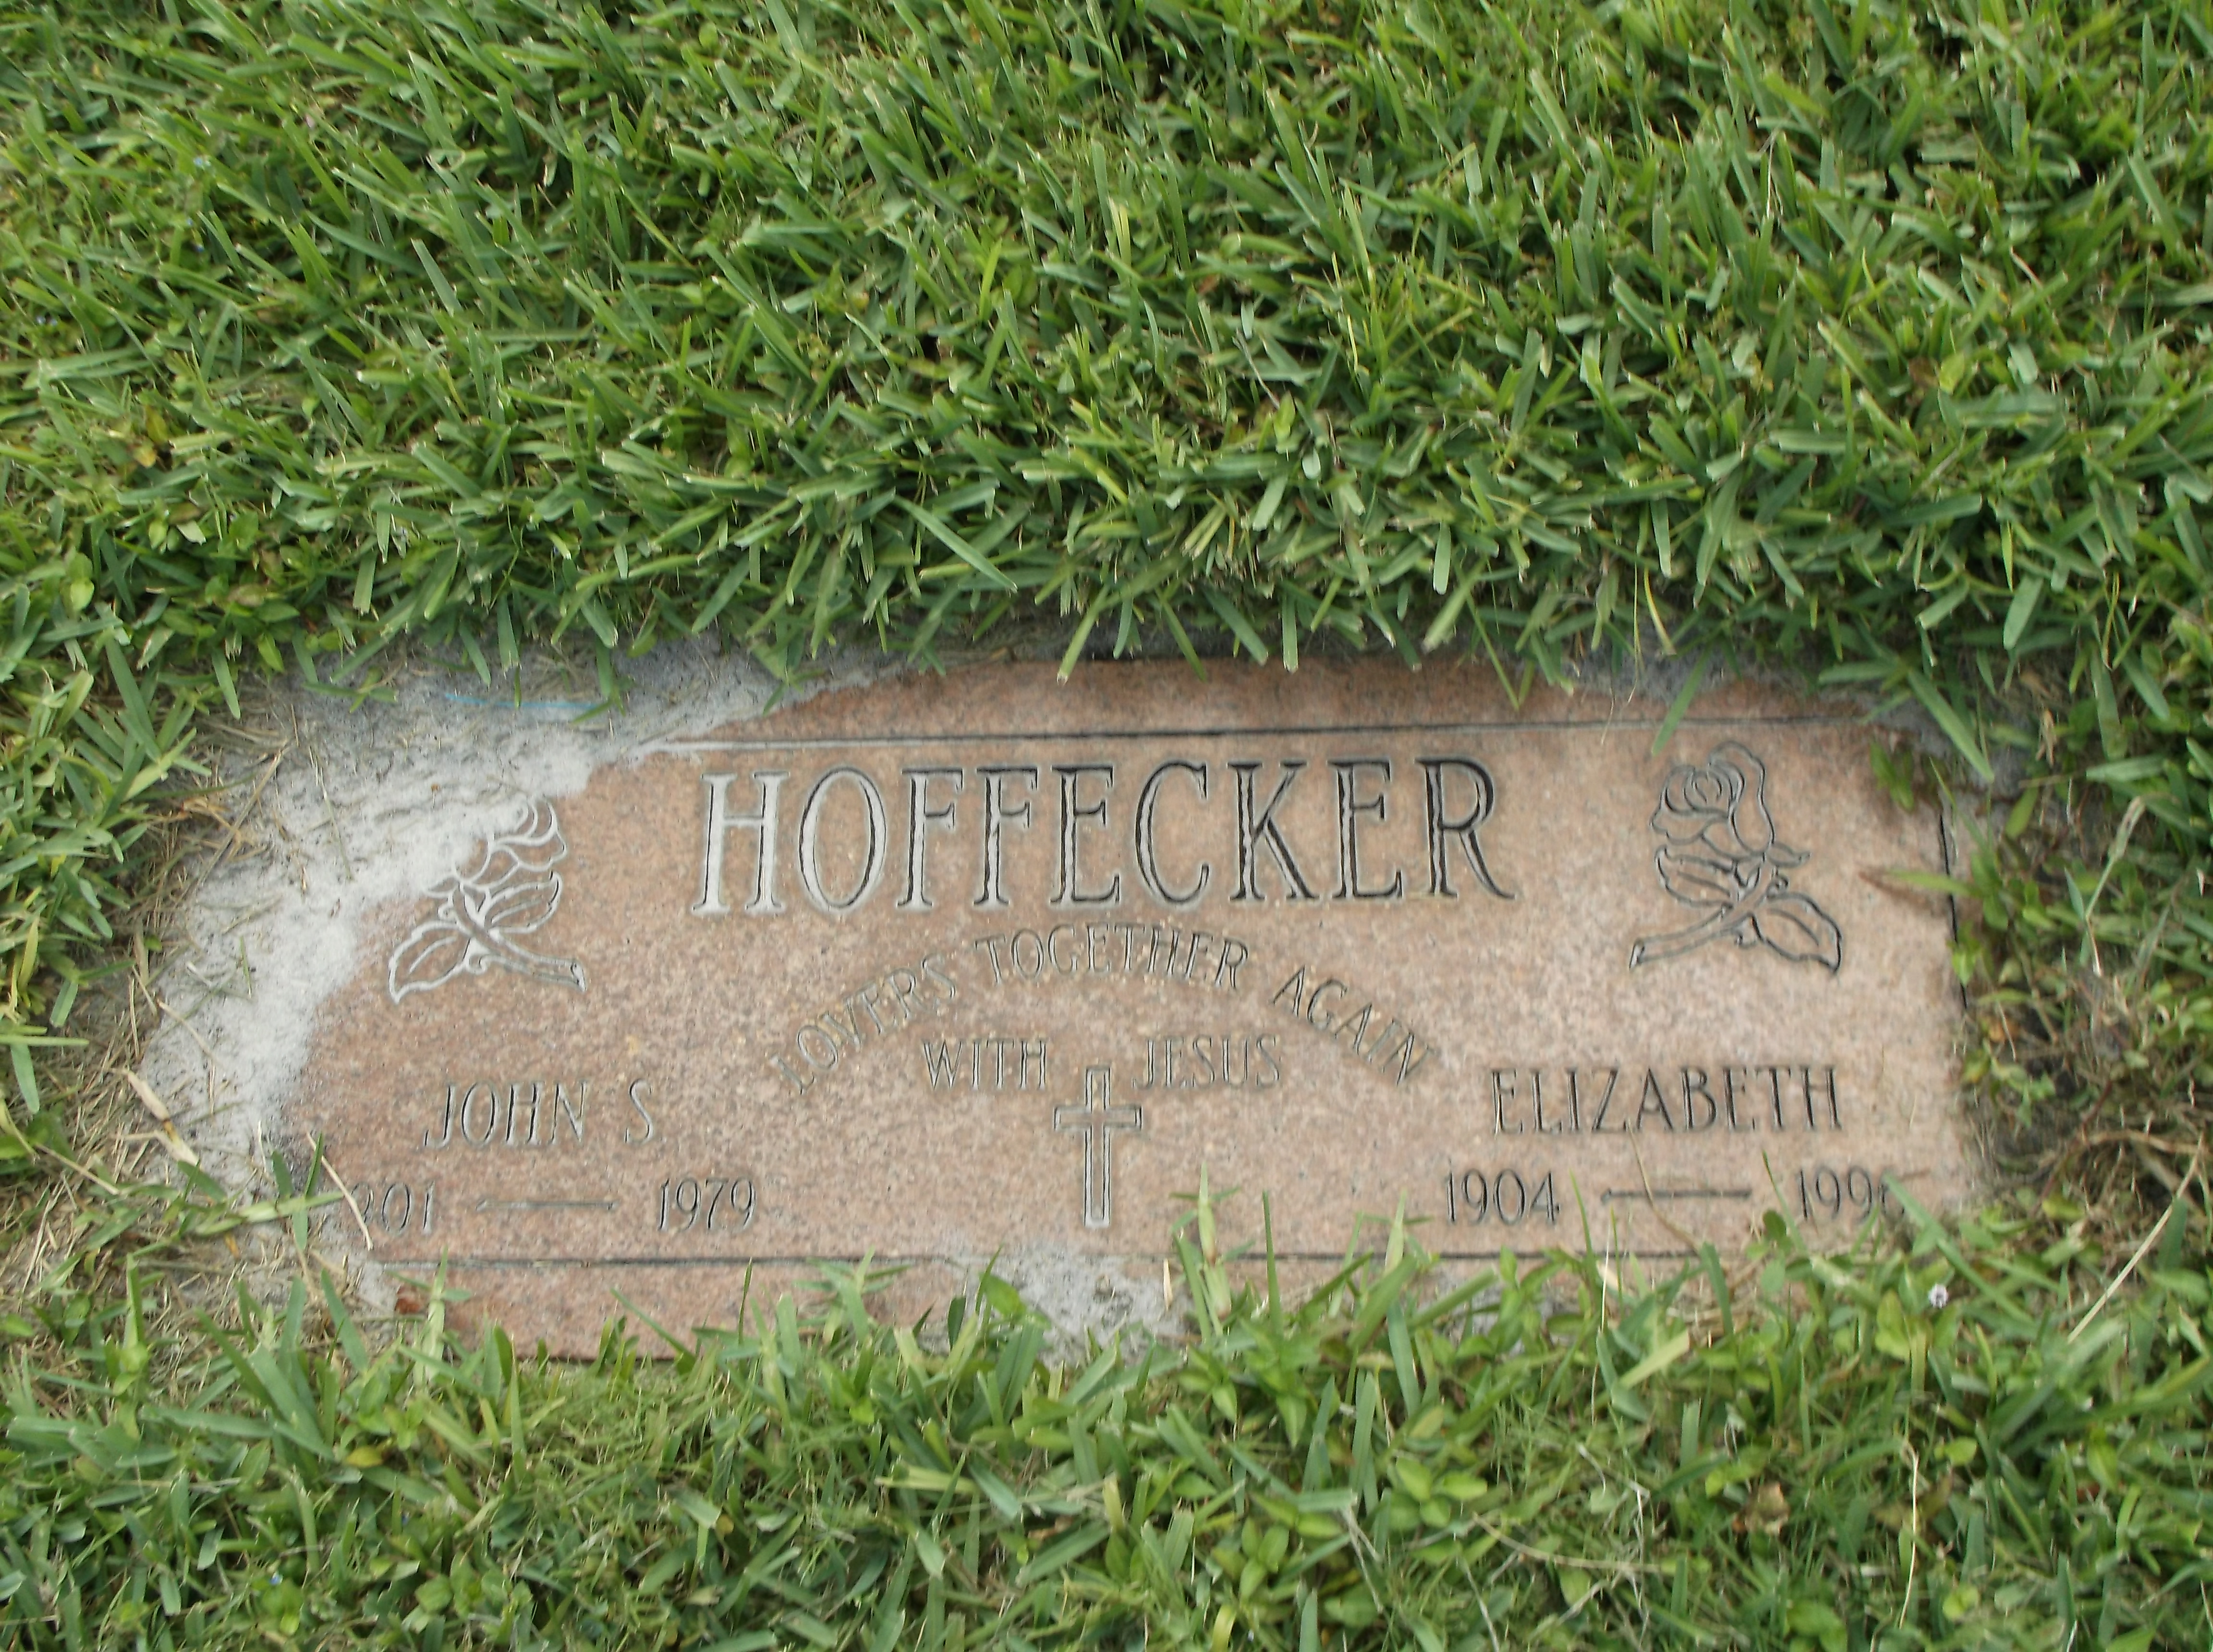 John S Hoffecker